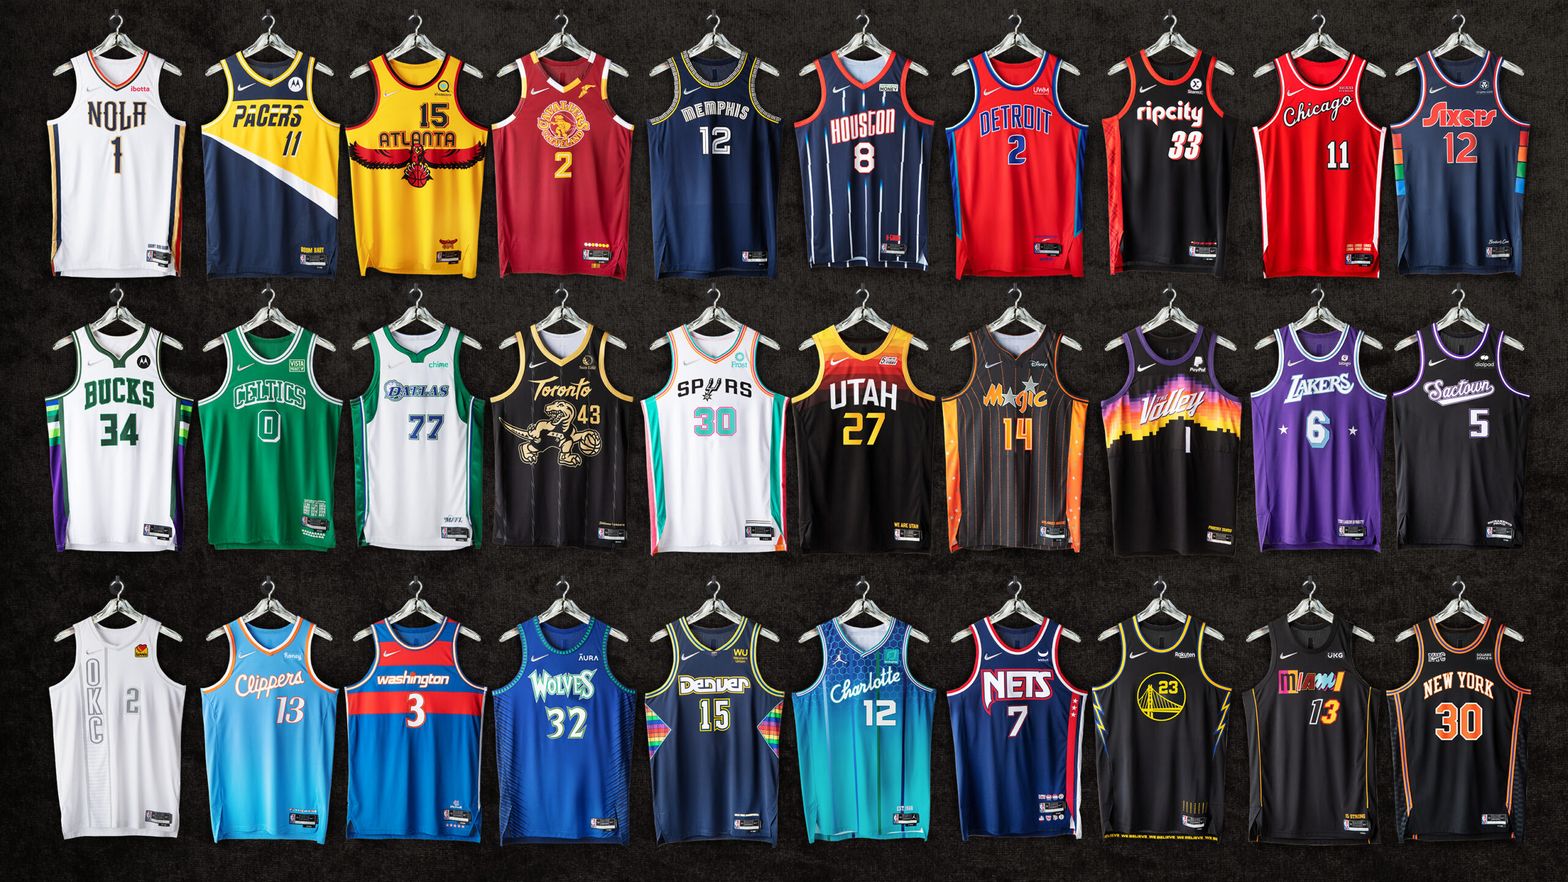 Les plus beaux maillots de l'histoire NBA 🤩 #nba #maillot #beau #nbat